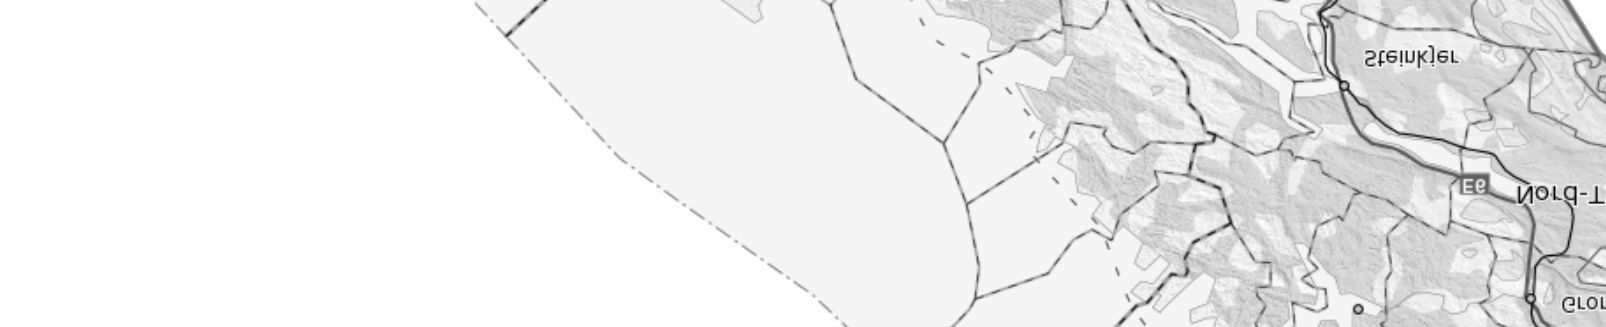 Skredpunkt Rv Region midt Skredfaktorgruppe Høy Middels Lav ± 0 20